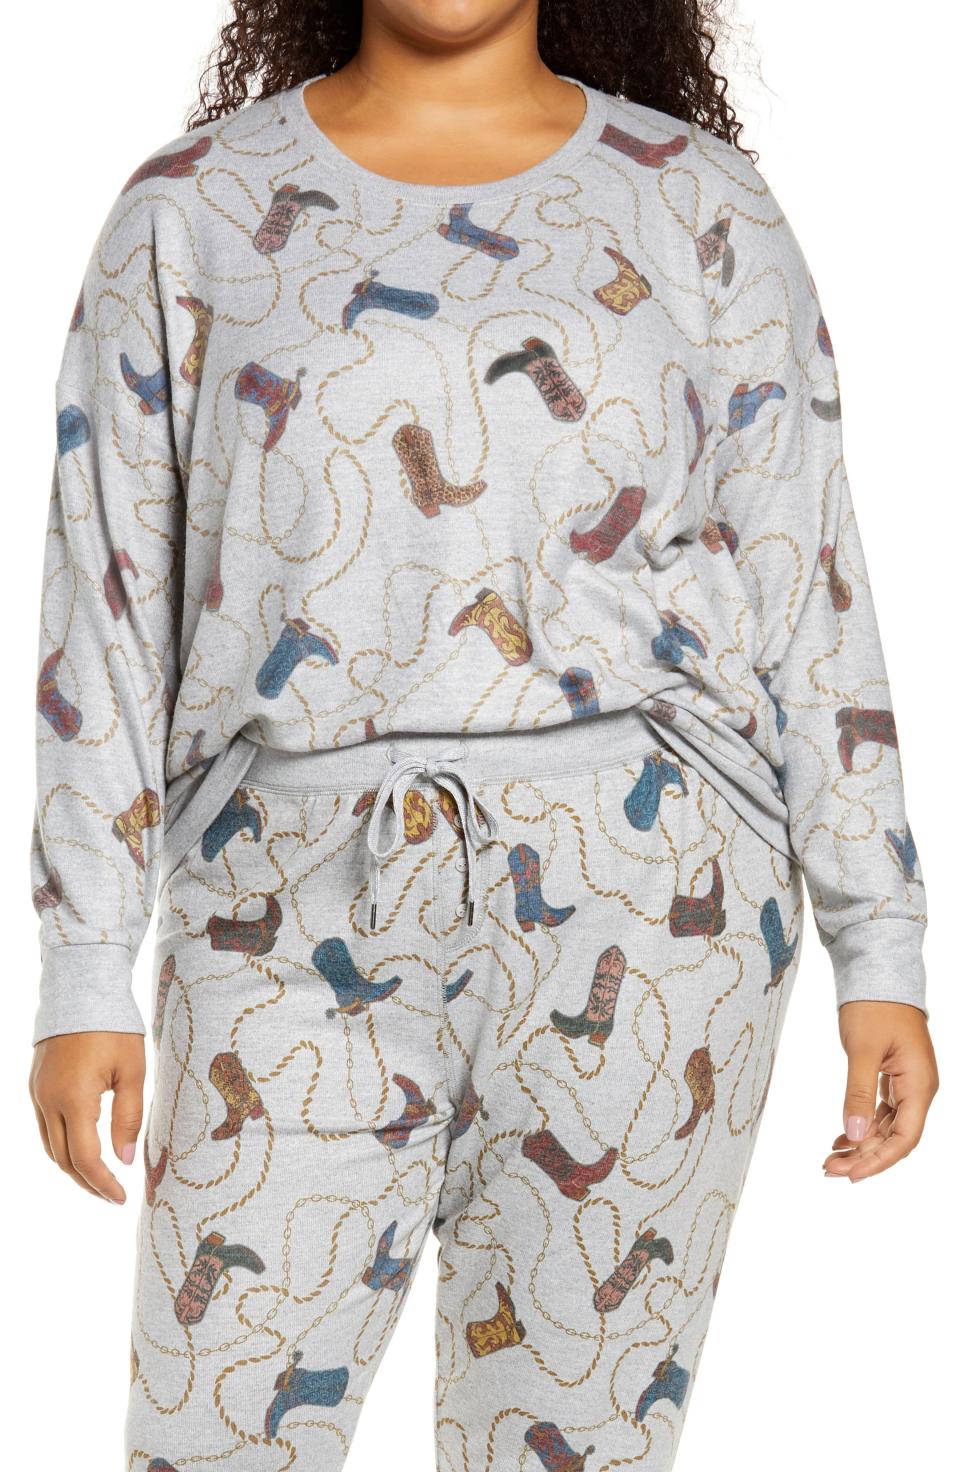 Plus-Size Western Jam Pajama Top